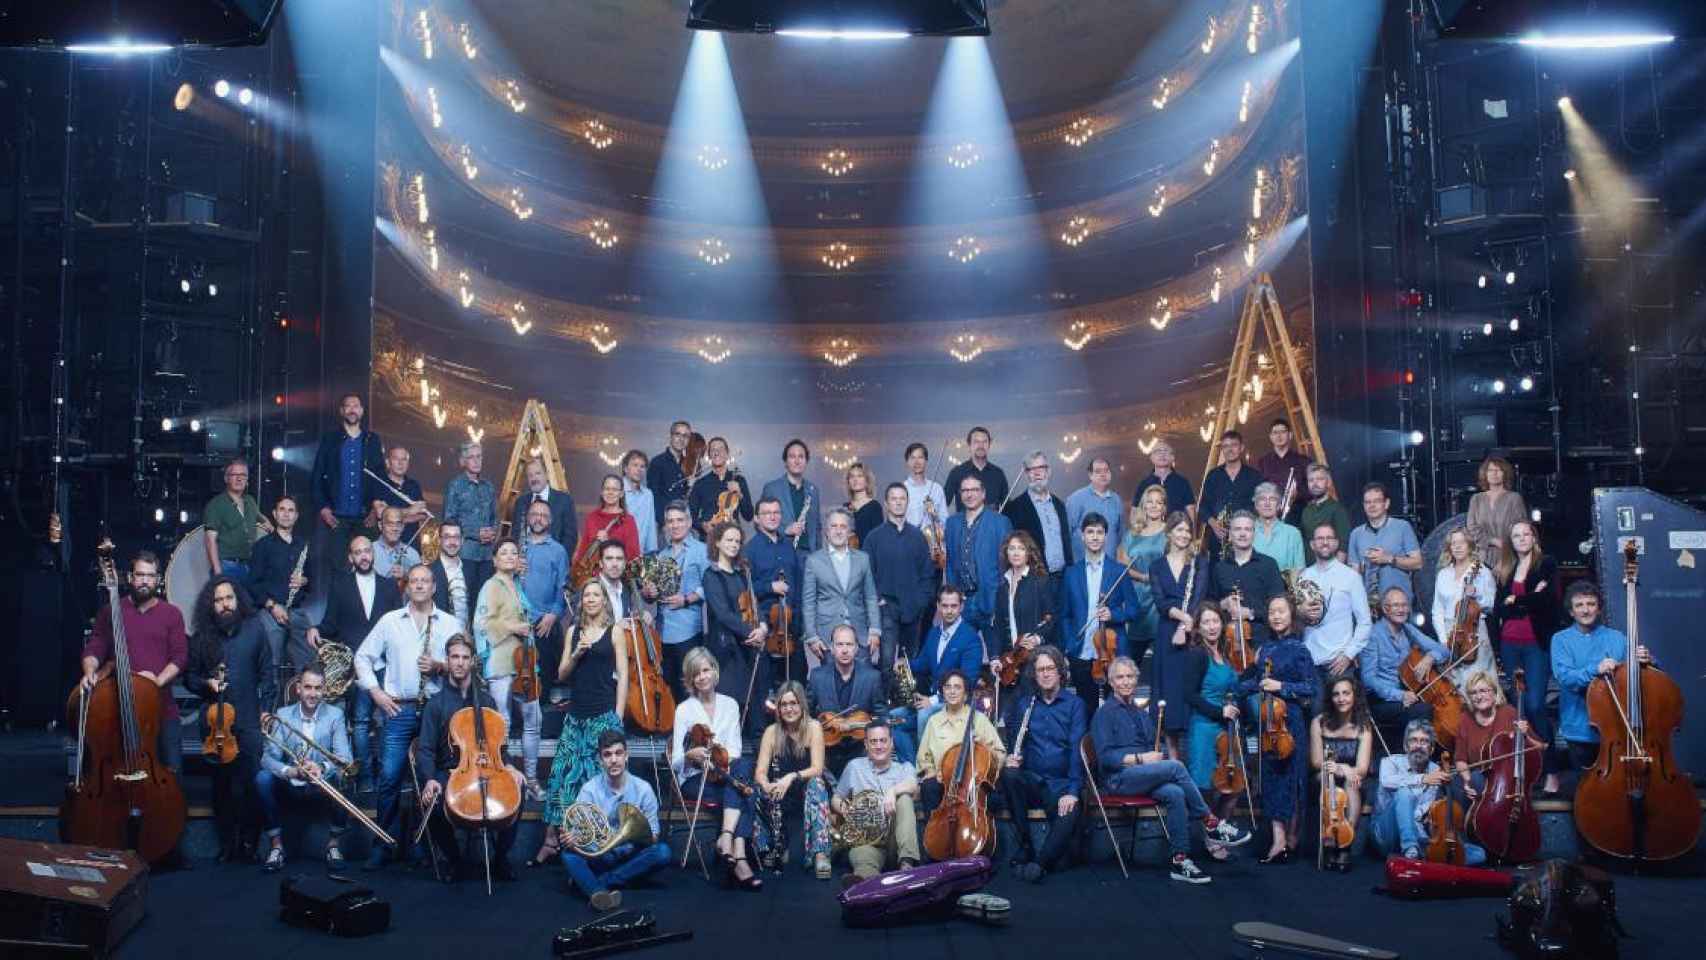 La Orquesta Sinfónica del Gran Teatro del Liceo / LICEU